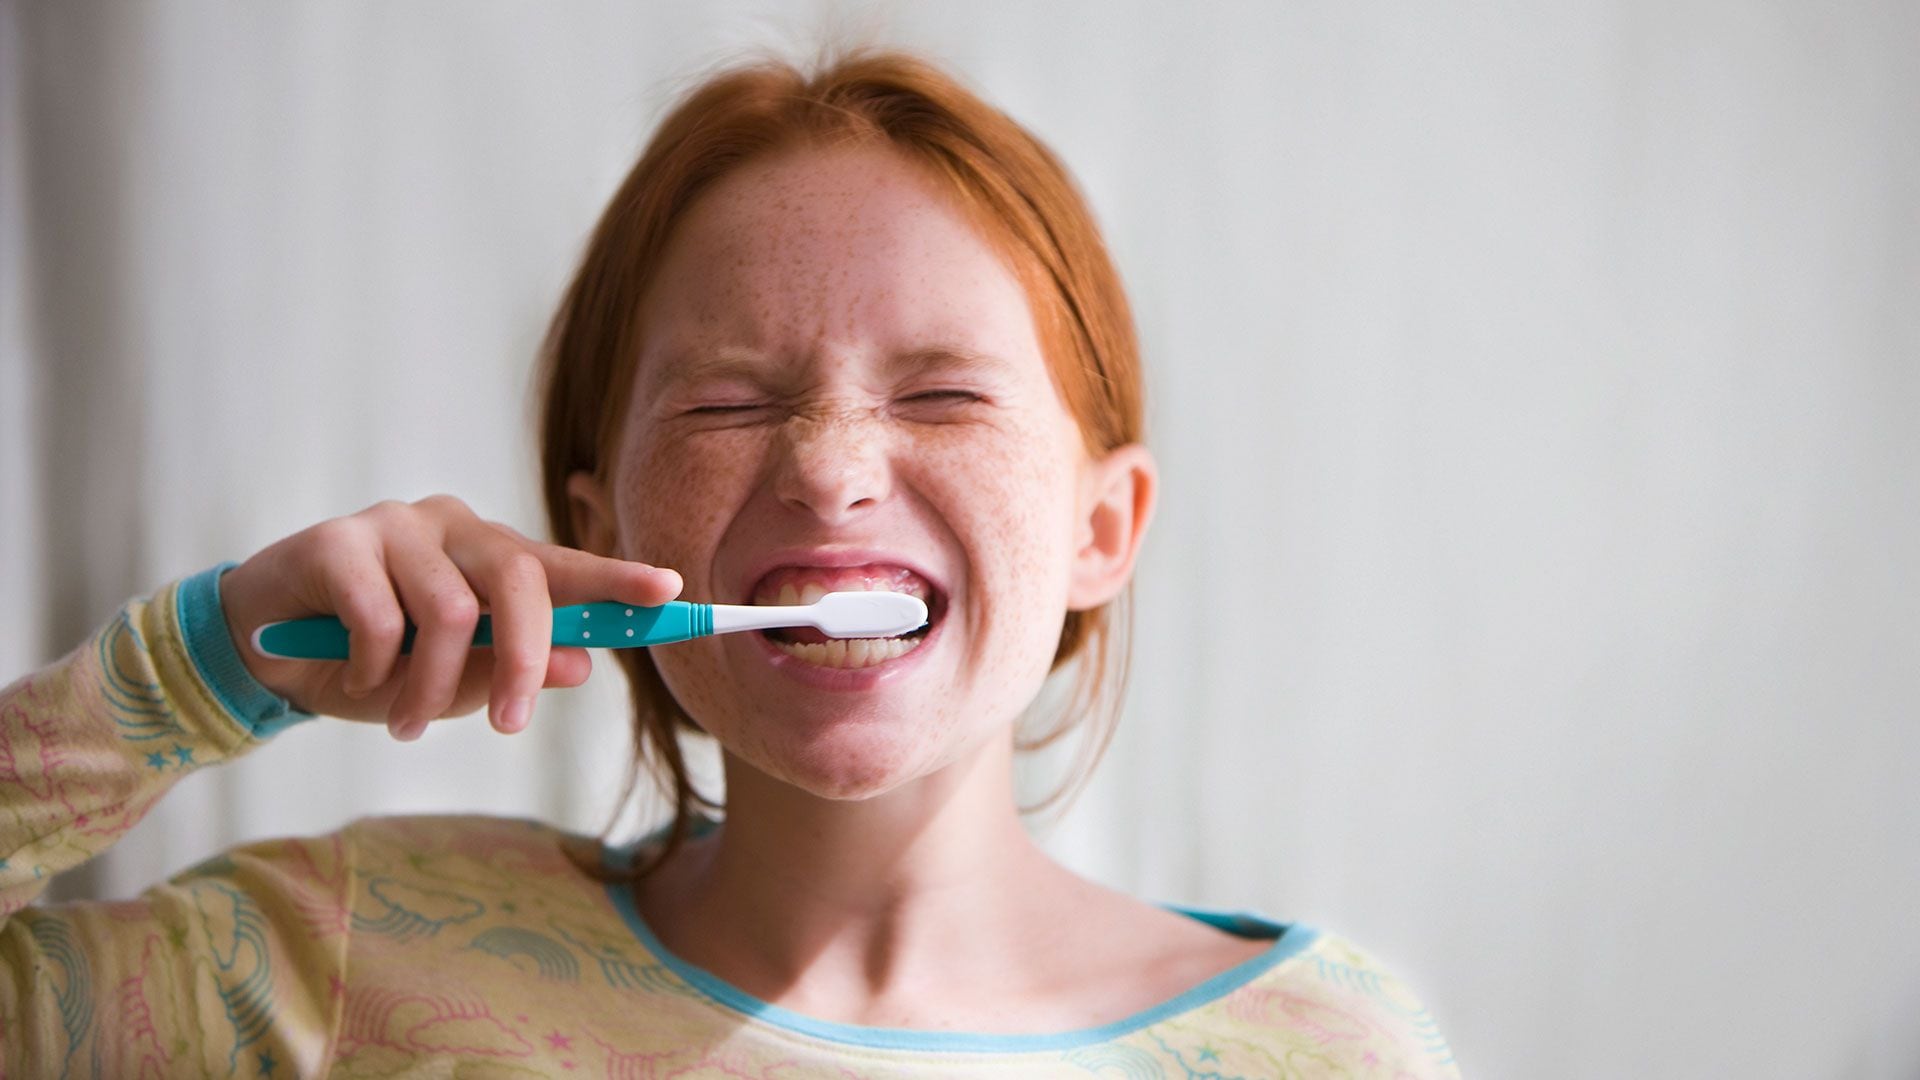 El bruxismo, un hábito involuntario y mecánico que hace que los pacientes aprieten los dientes a modo de compresión (Getty Images)